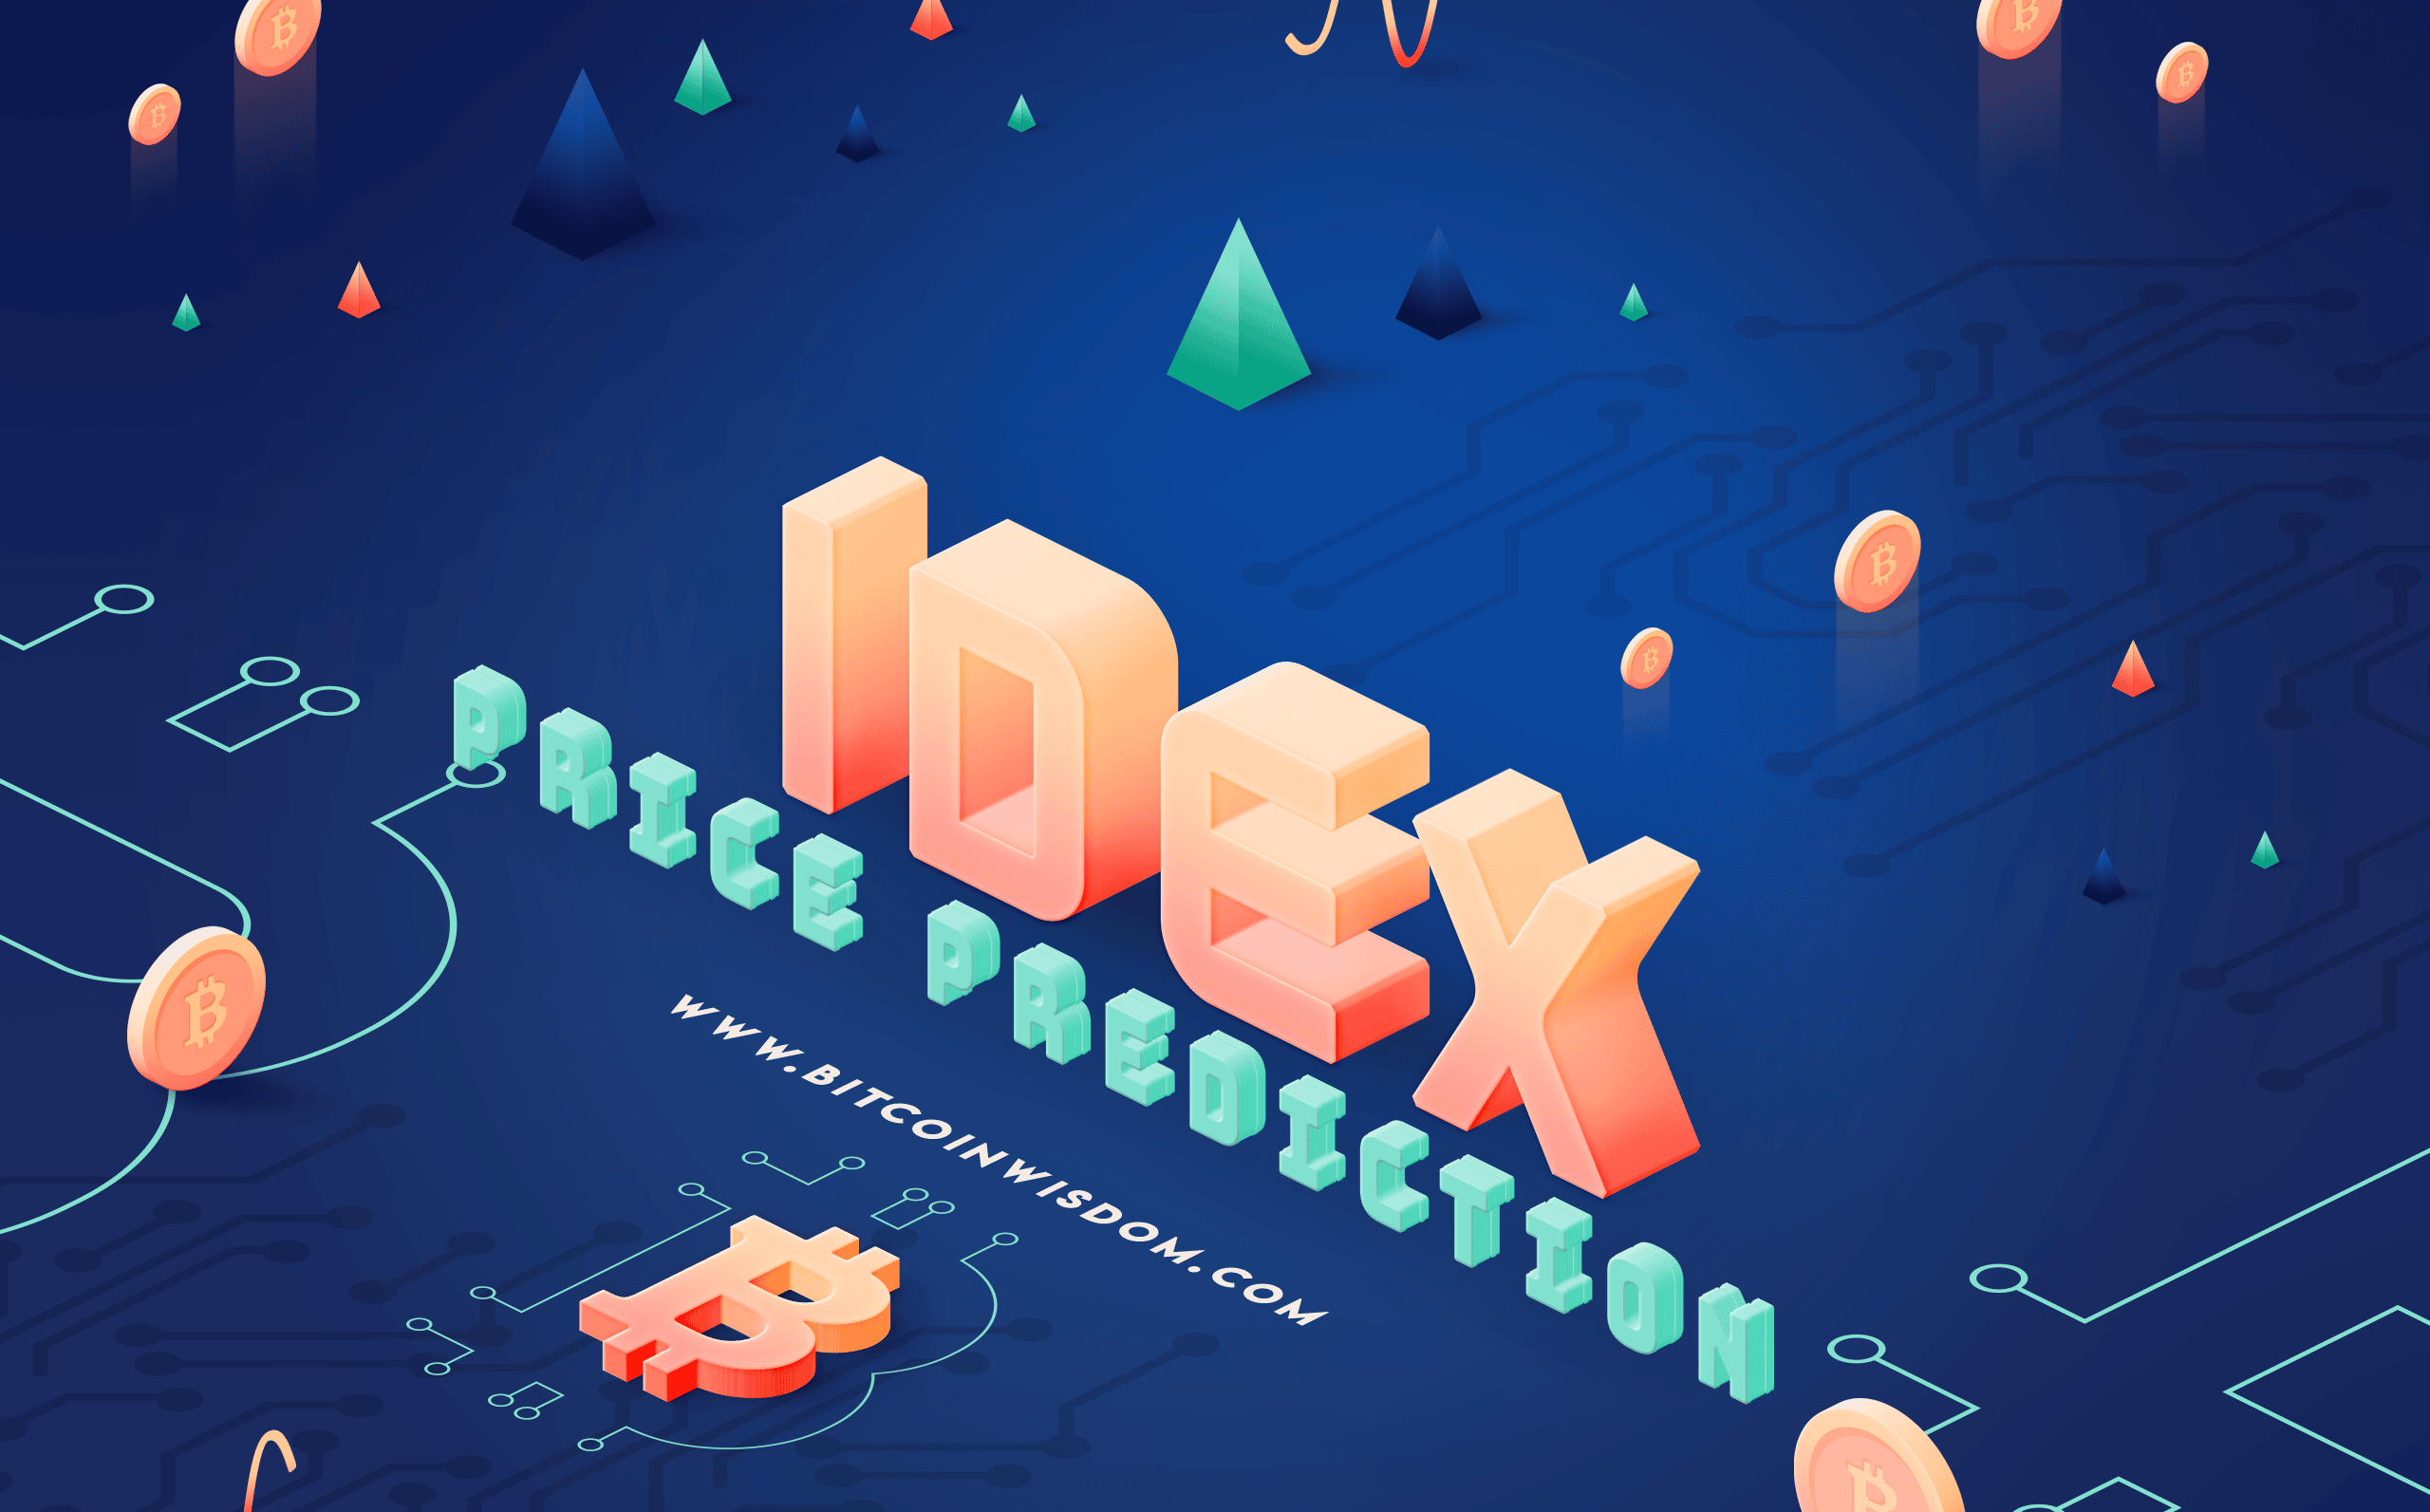 Idex (IDEX) Price Prediction 2023, 2025, 2030